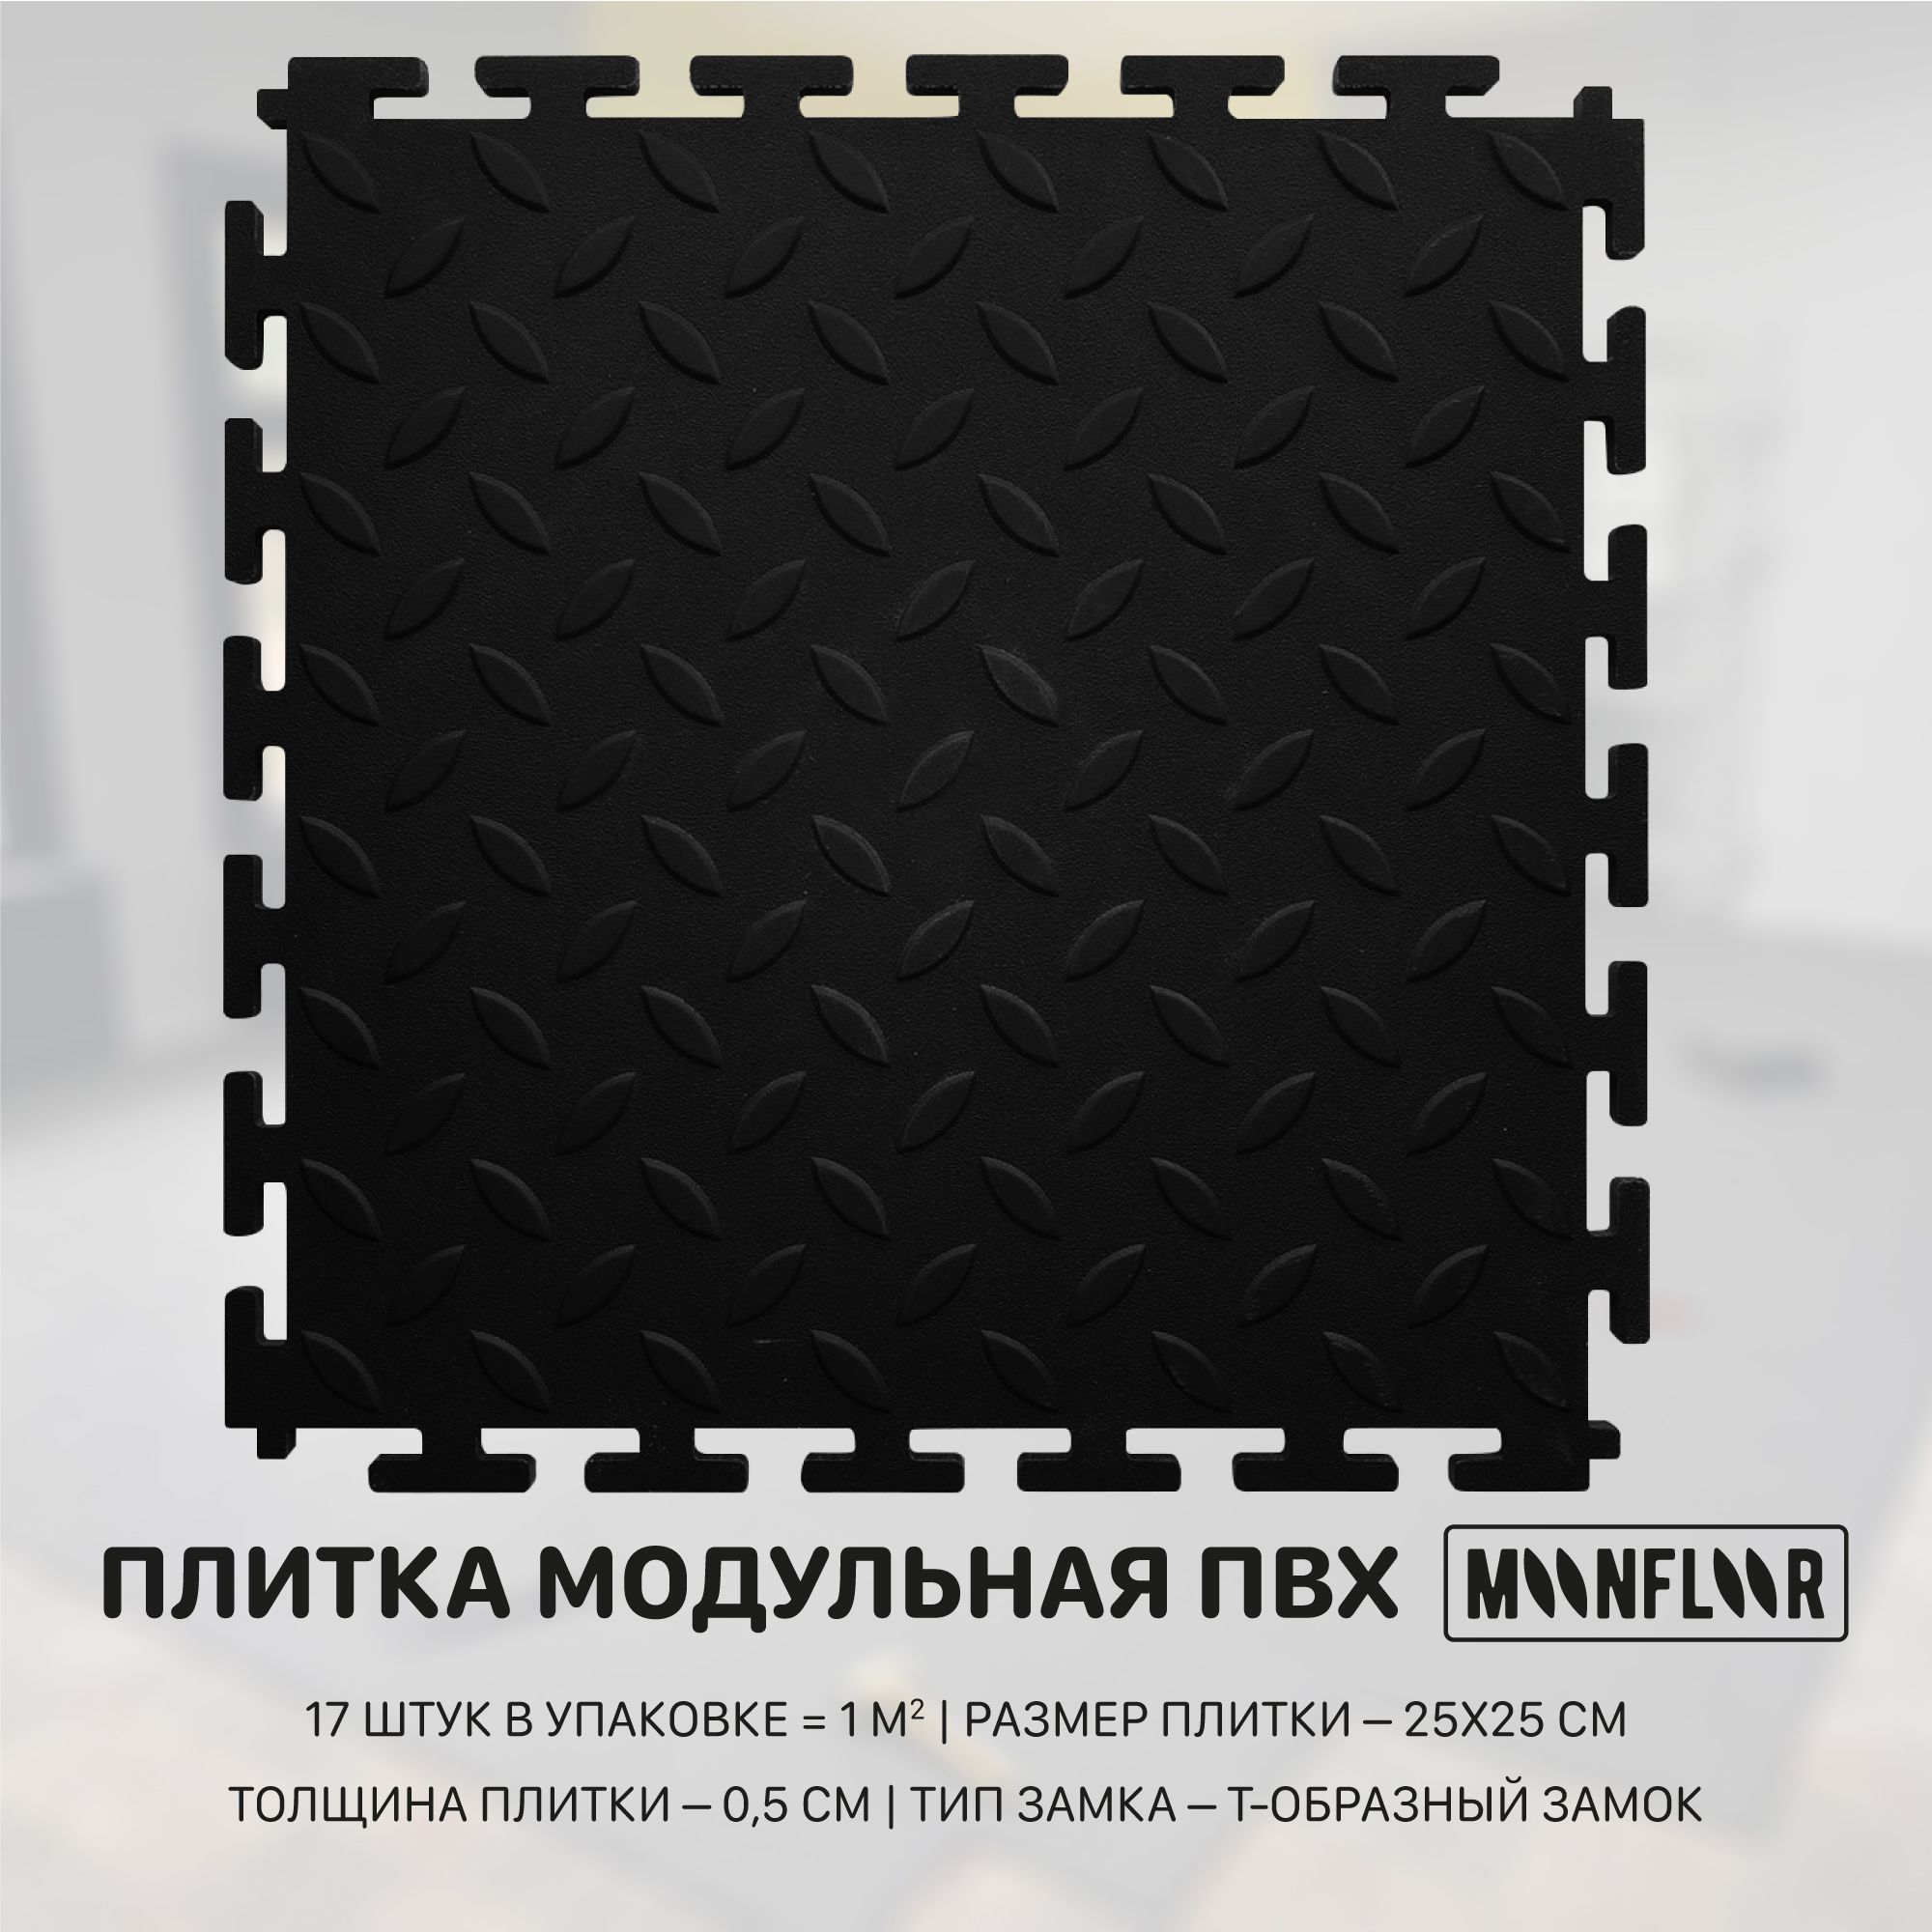 Плитка ПВХ moonfloor Рис, черный, 250x250 мм купить по выгодной цене в  интернет-магазине OZON (764436375)